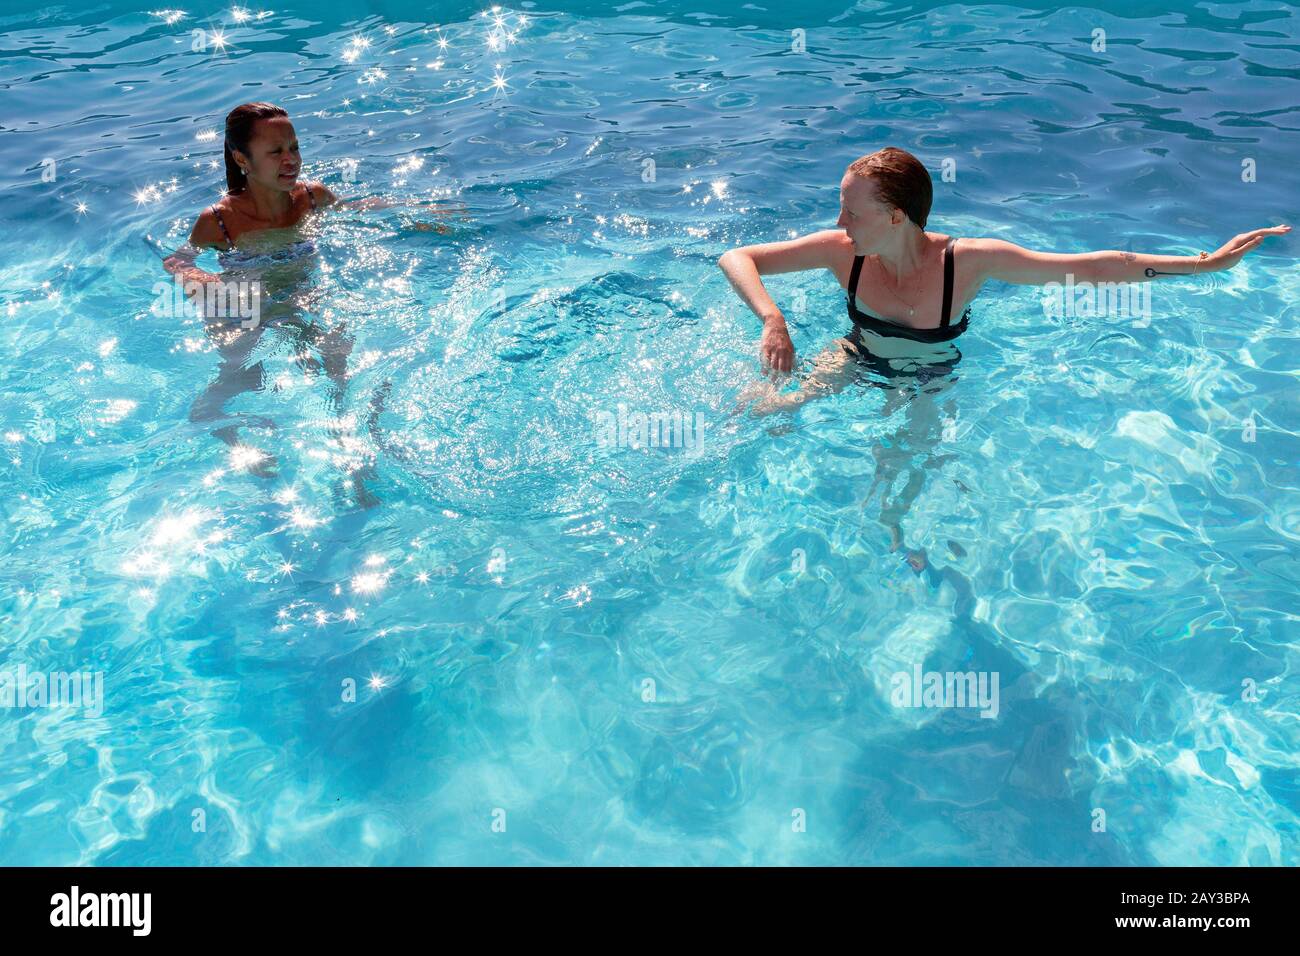 Les femmes nagent dans la piscine Banque D'Images